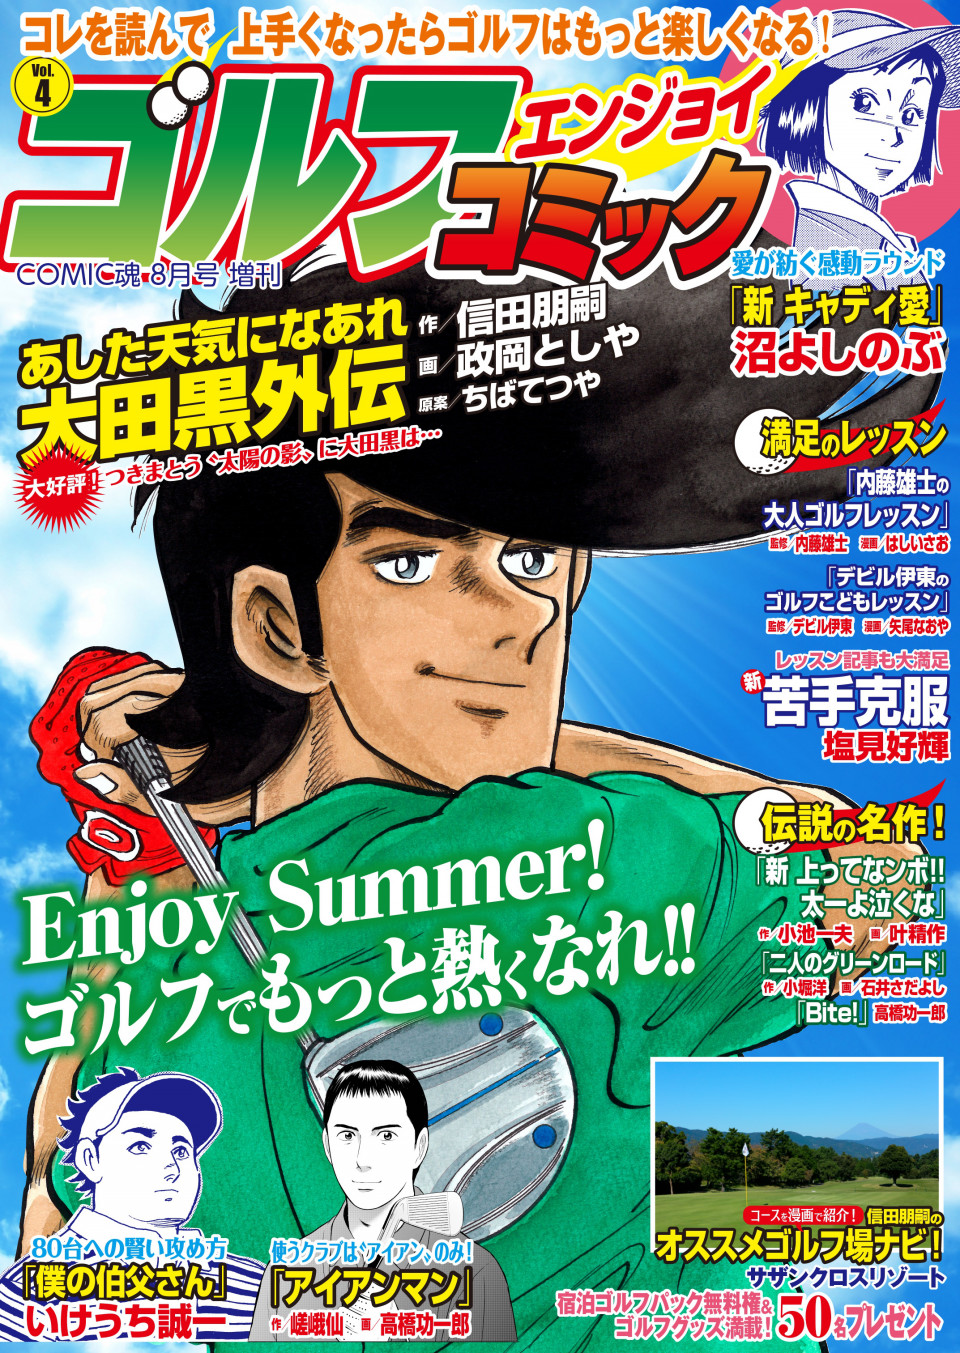 Comic魂８月号増刊 ゴルフエンジョイコミック Vol 4 2019年6月25日発売 はちどり 本の企画 編集から Comic魂 女子ごはんなどの本の出版まで